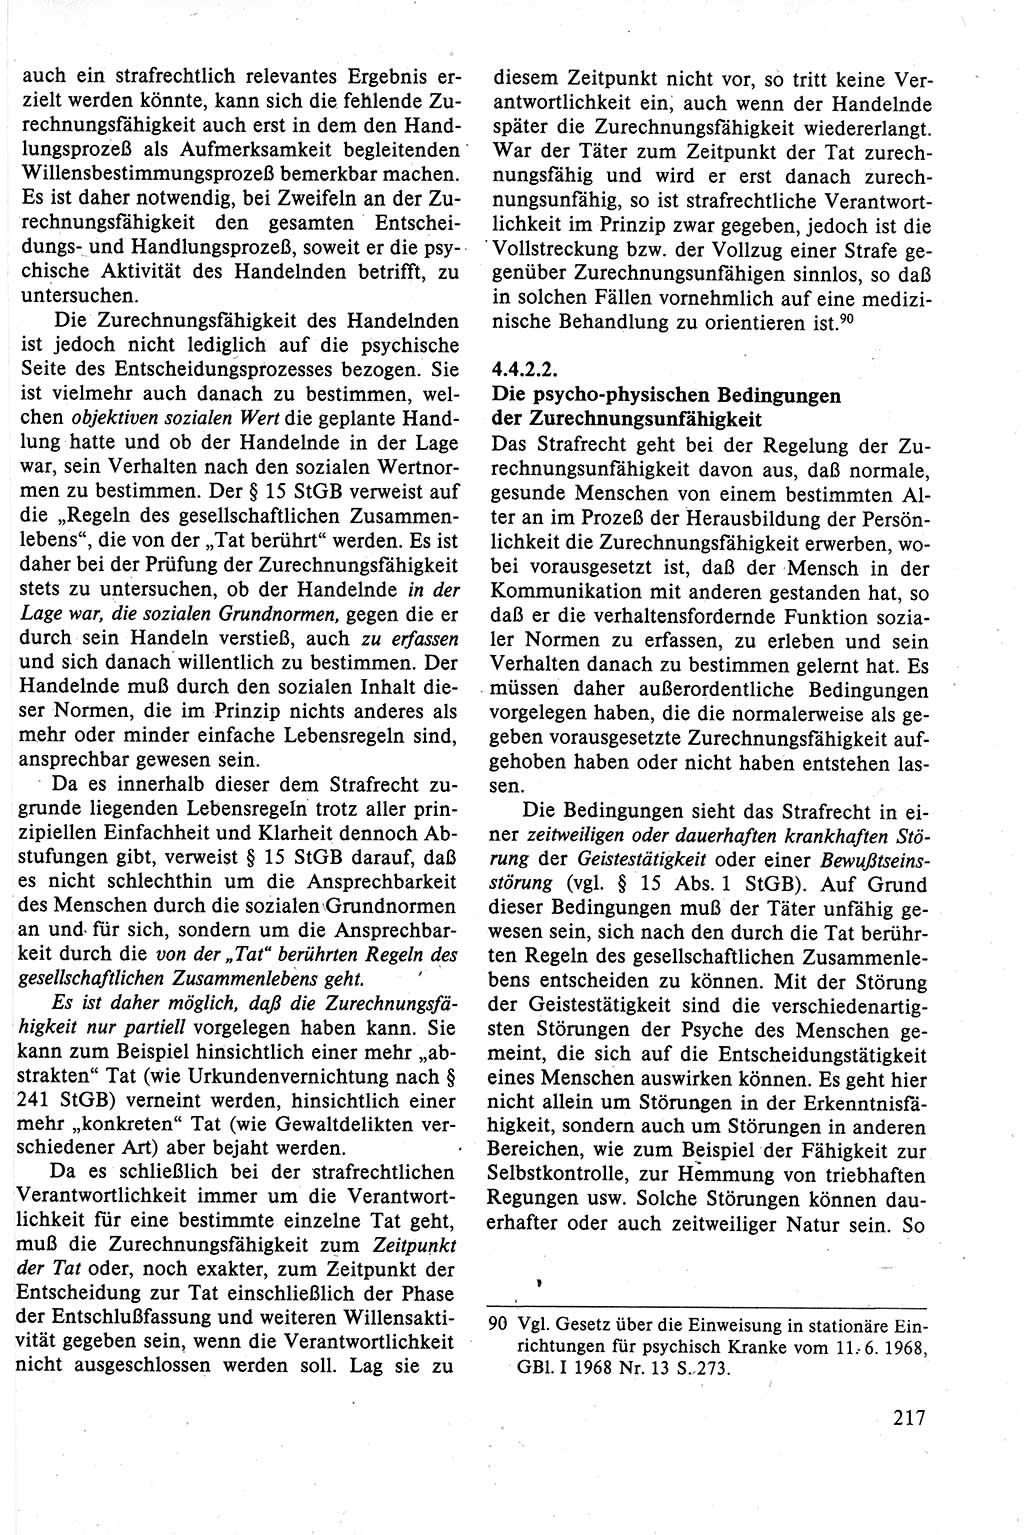 Strafrecht der DDR (Deutsche Demokratische Republik), Lehrbuch 1988, Seite 217 (Strafr. DDR Lb. 1988, S. 217)